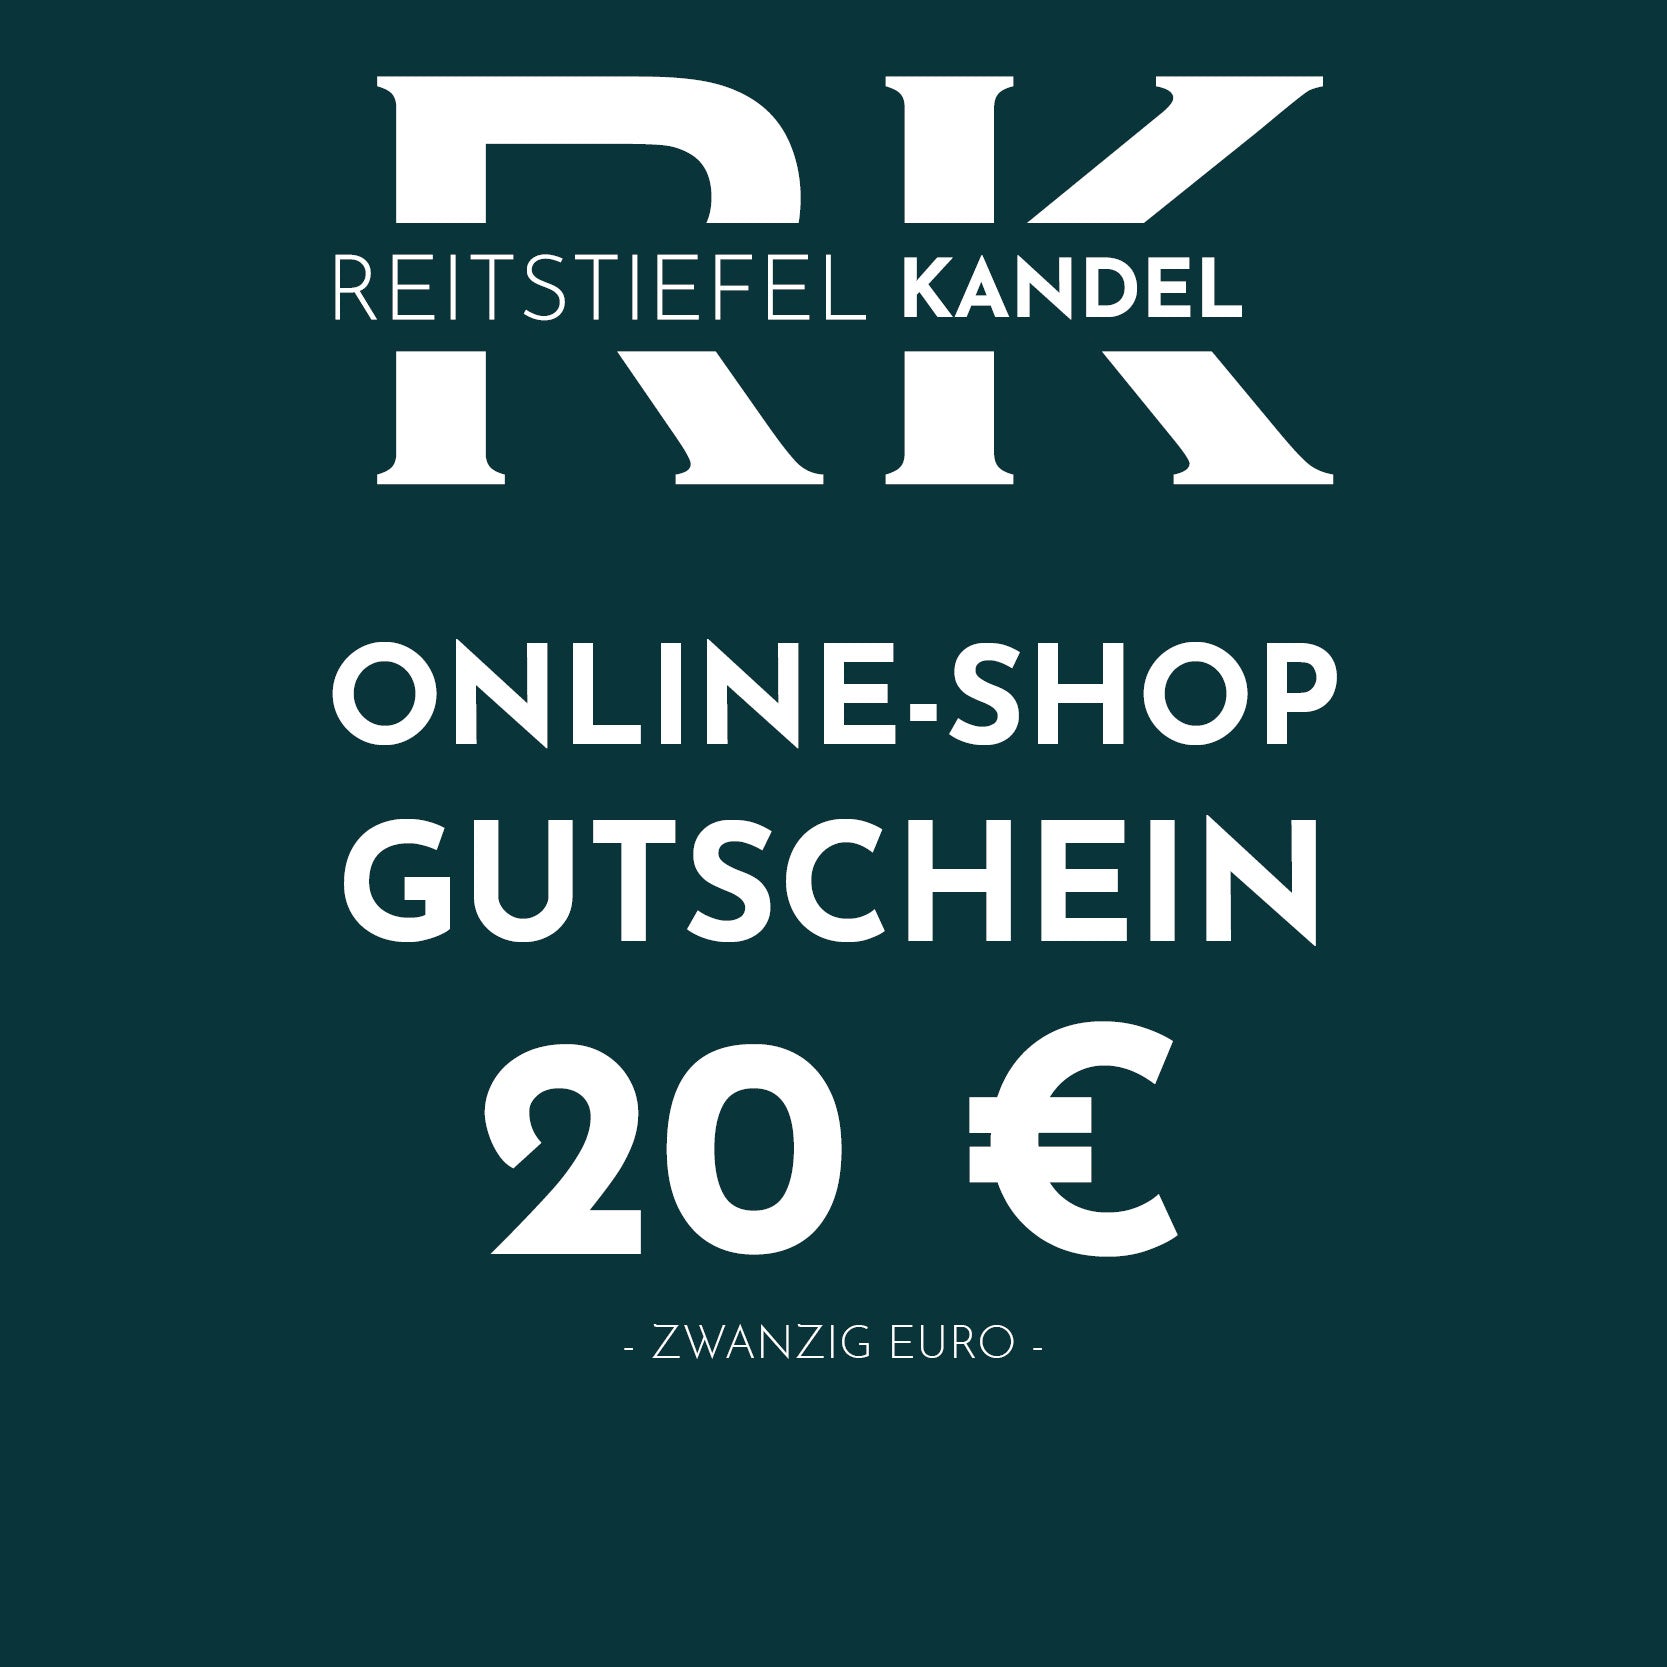 Online-Shop Gutschein - Reitstiefel Kandel